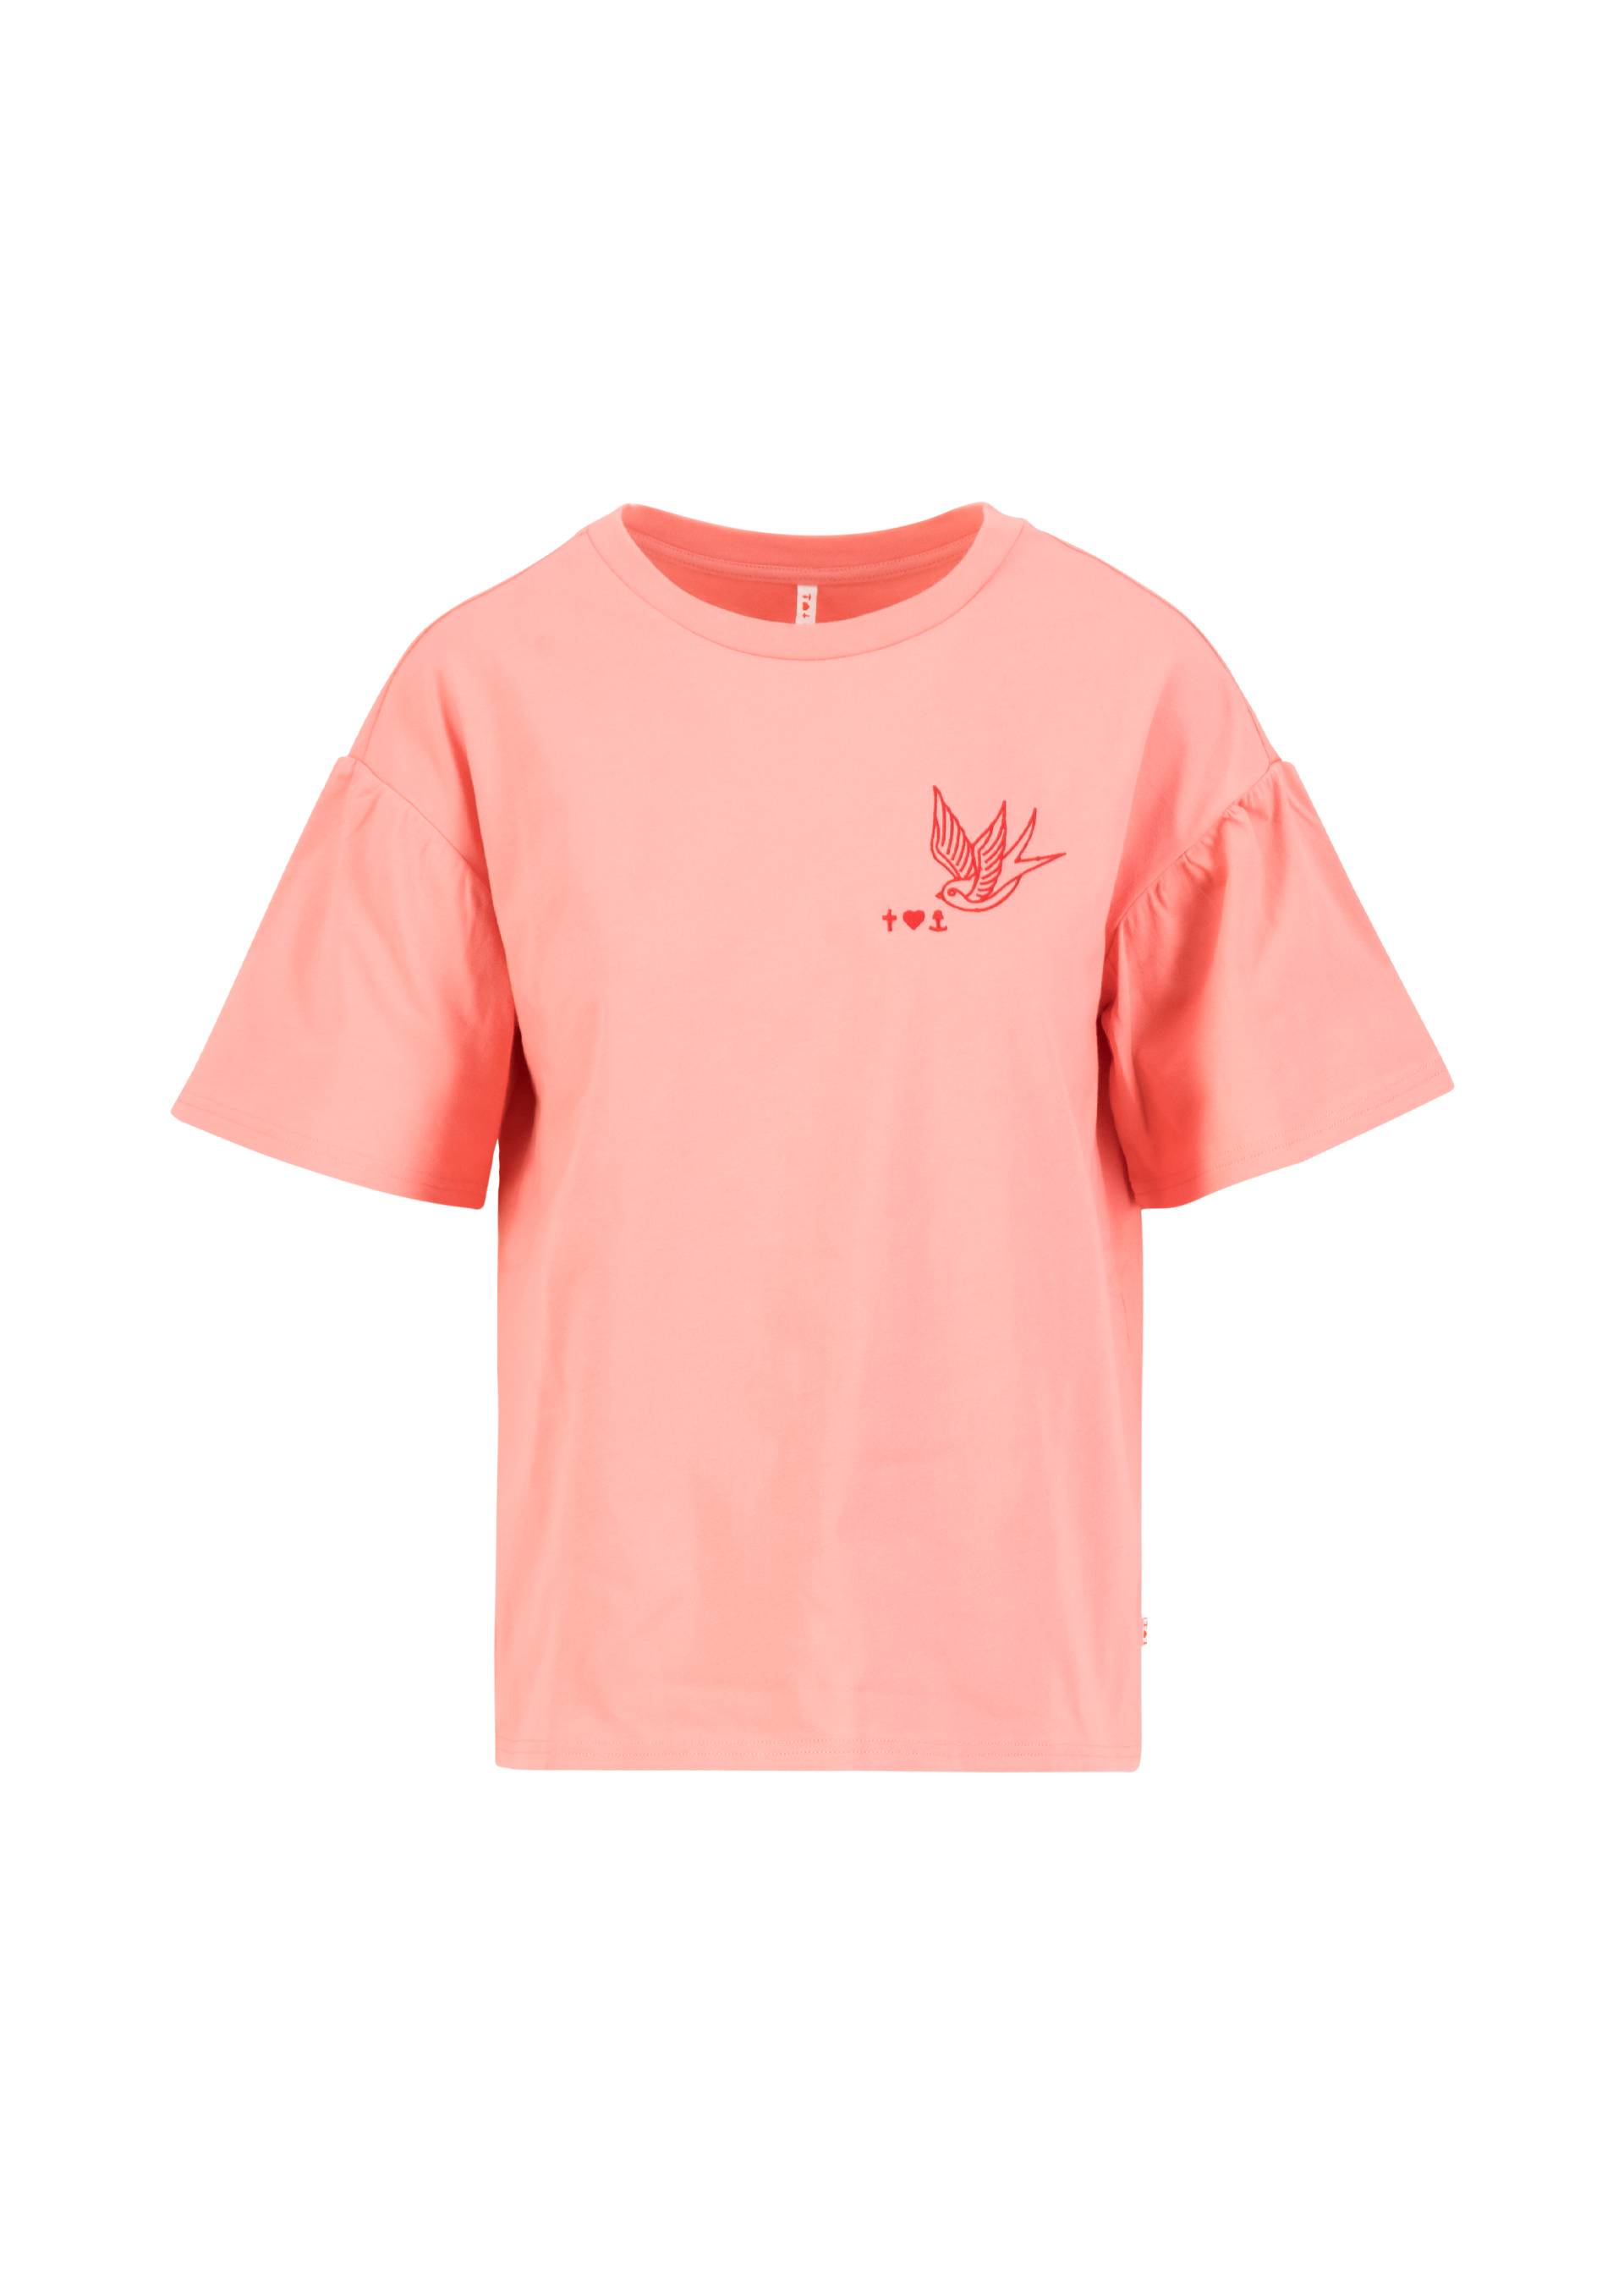 T-Shirt Bubblegum Romance, thinking peace pink, Shirts, Rosa